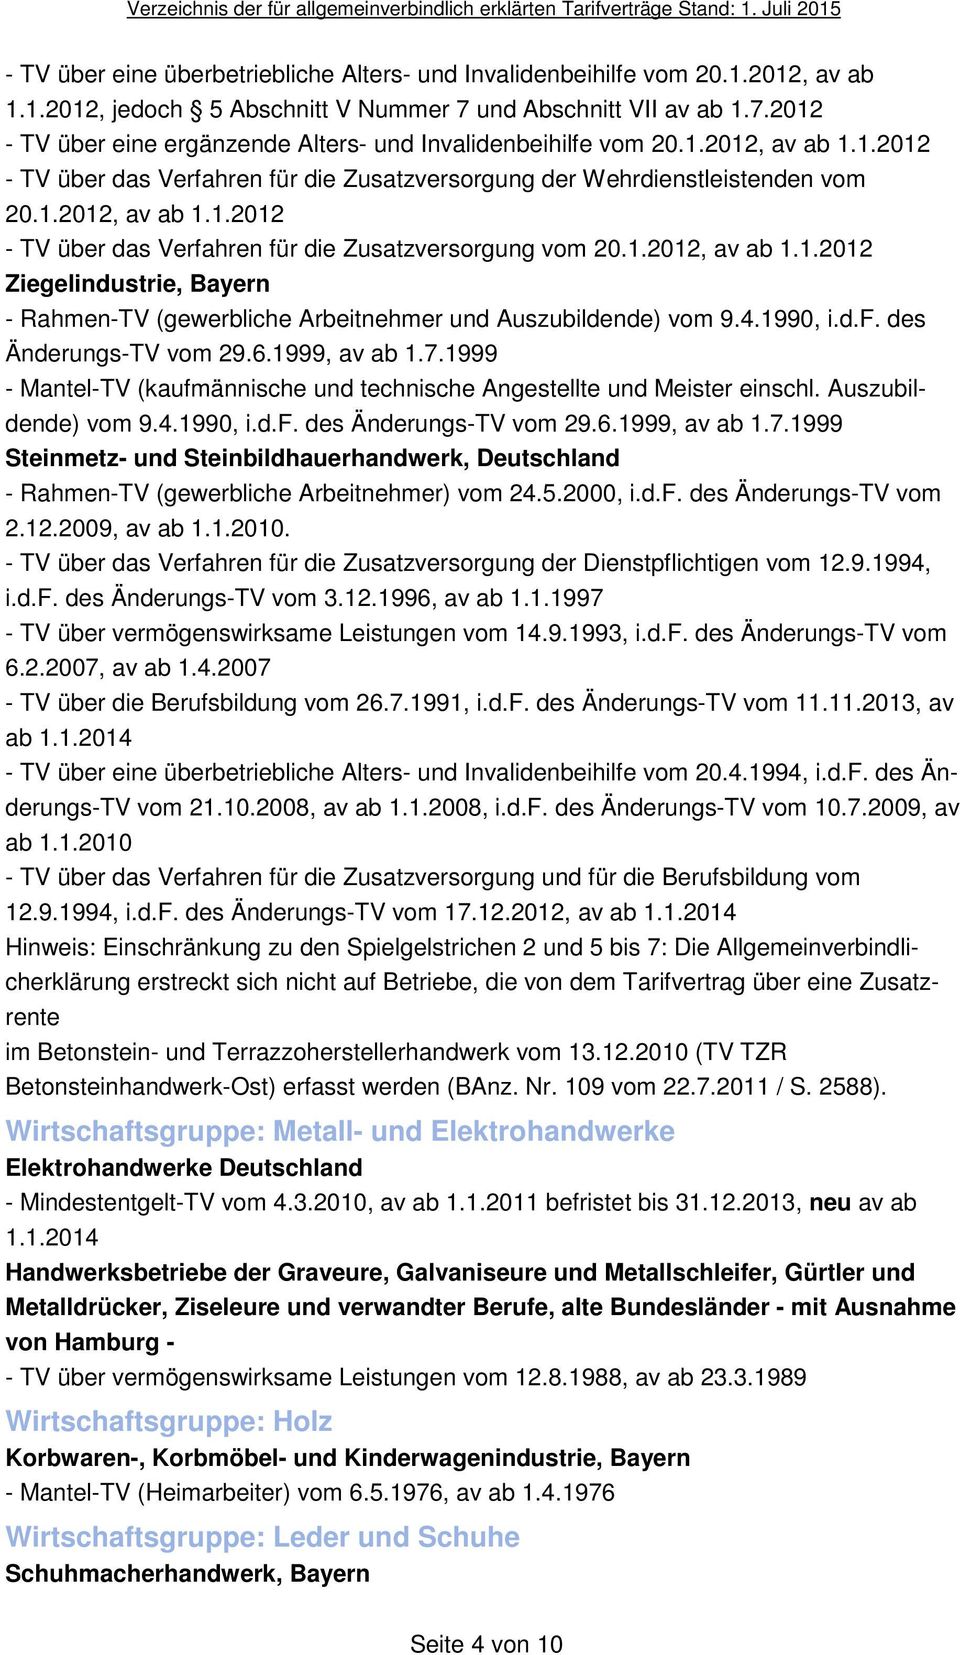 4.1990, i.d.f. des Änderungs-TV vom 29.6.1999, av ab 1.7.1999 - Mantel-TV (kaufmännische und technische Angestellte und Meister einschl. Auszubildende) vom 9.4.1990, i.d.f. des Änderungs-TV vom 29.6.1999, av ab 1.7.1999 Steinmetz- und Steinbildhauerhandwerk, Deutschland - Rahmen-TV (gewerbliche Arbeitnehmer) vom 24.